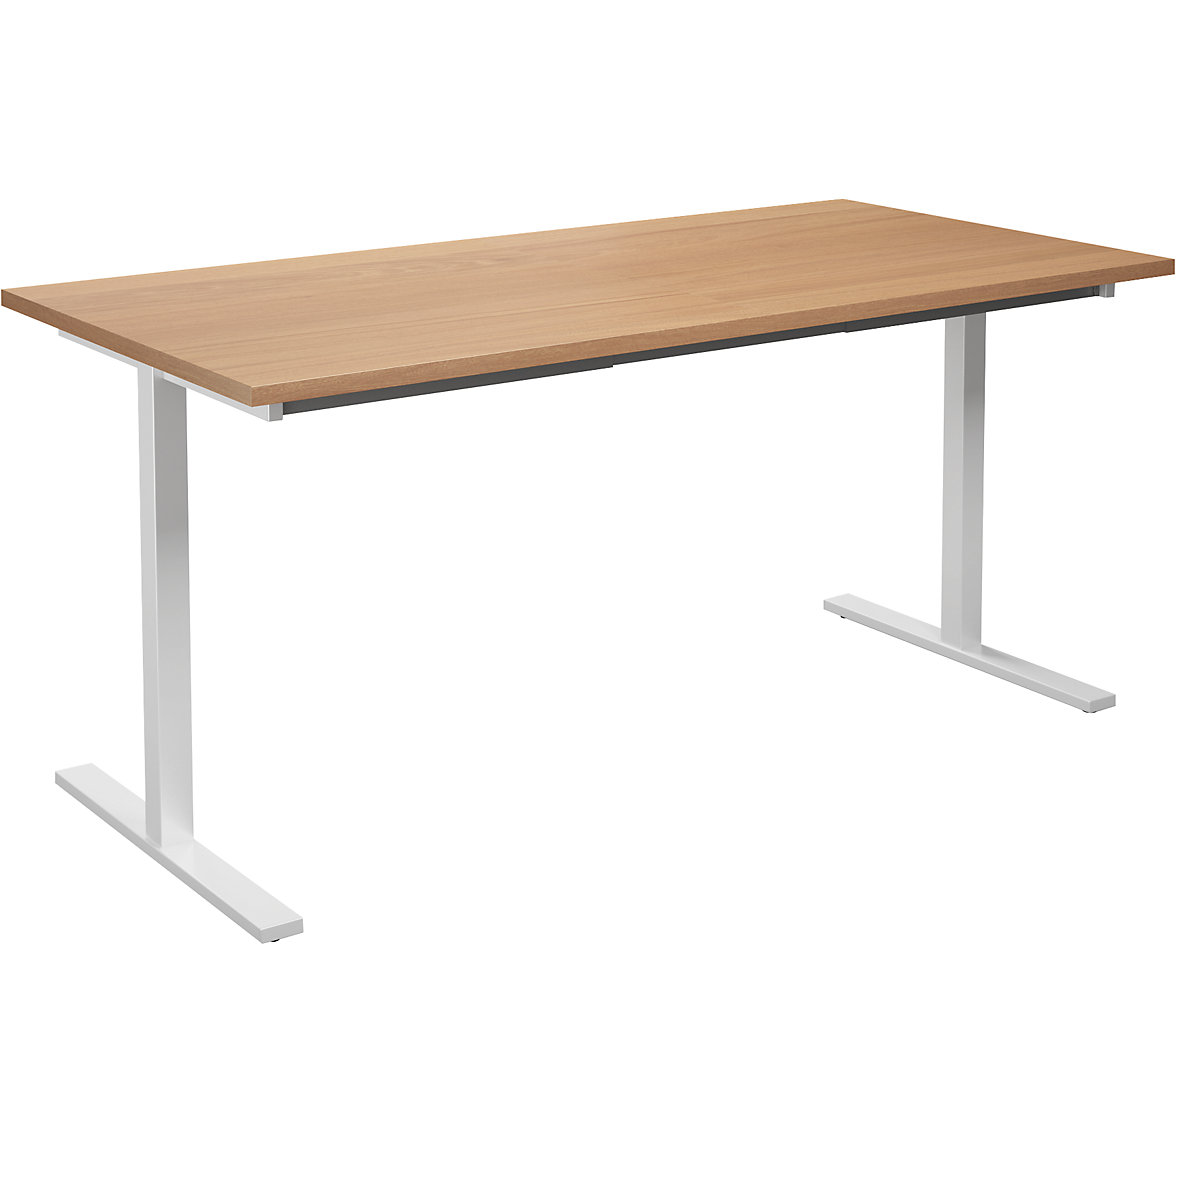 Multifunctionele tafel DUO-T, recht blad